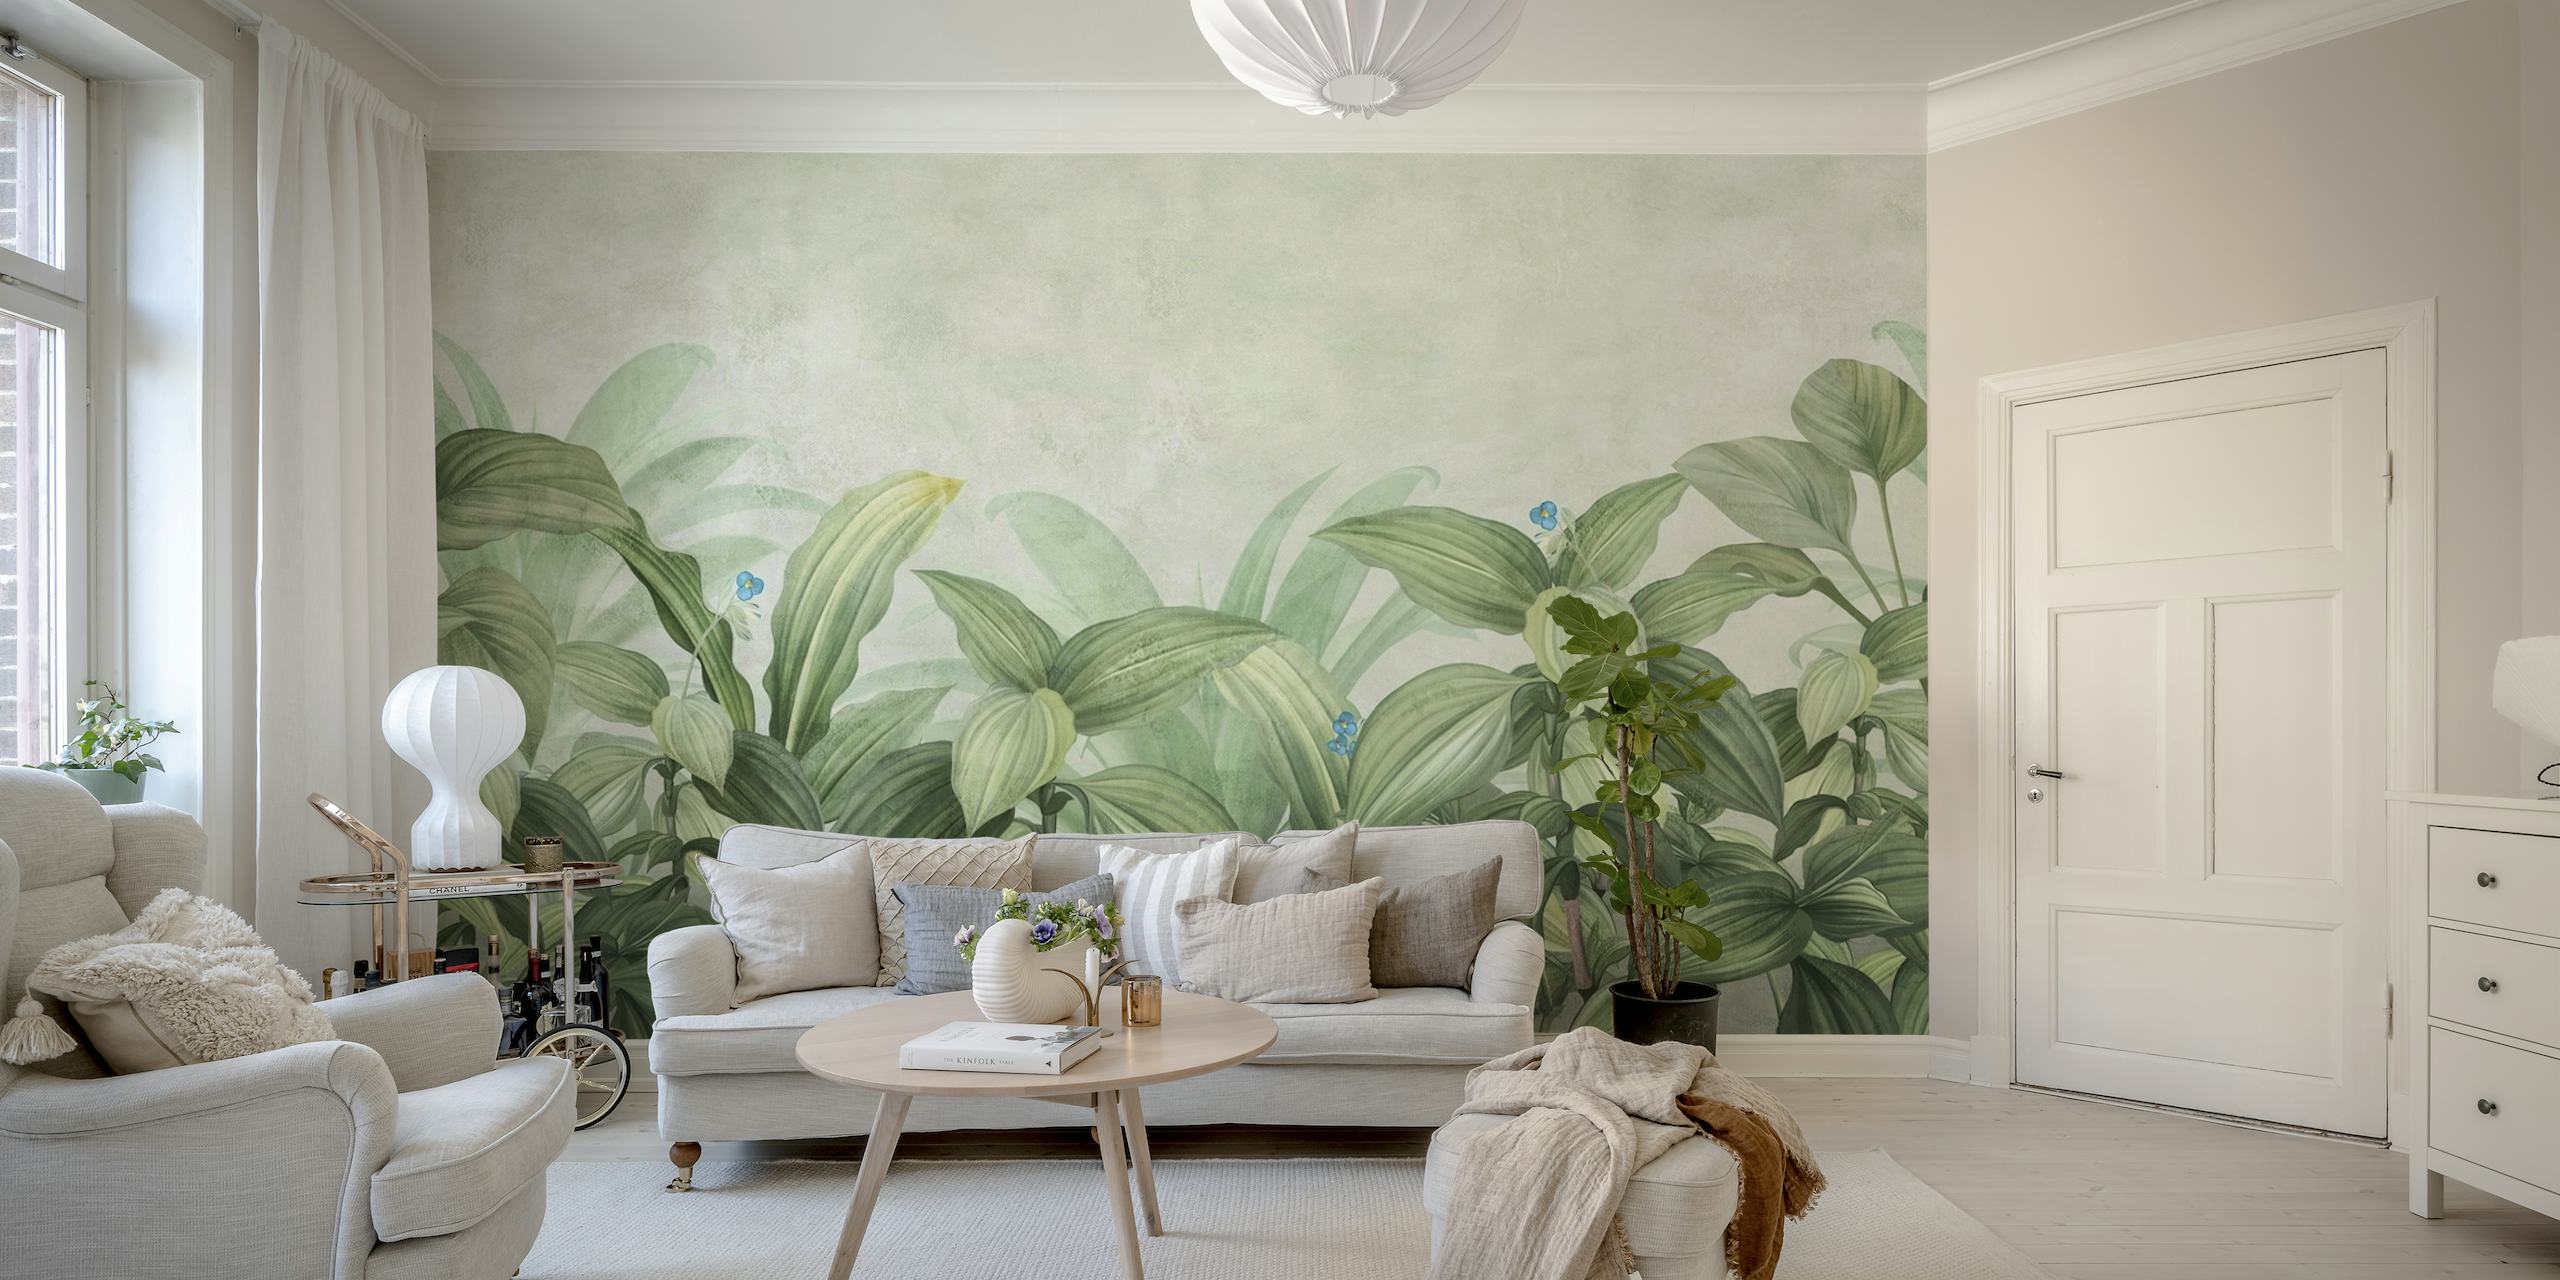 Papier peint mural élégant à feuillage tropical avec des feuilles vertes luxuriantes et des accents floraux subtils